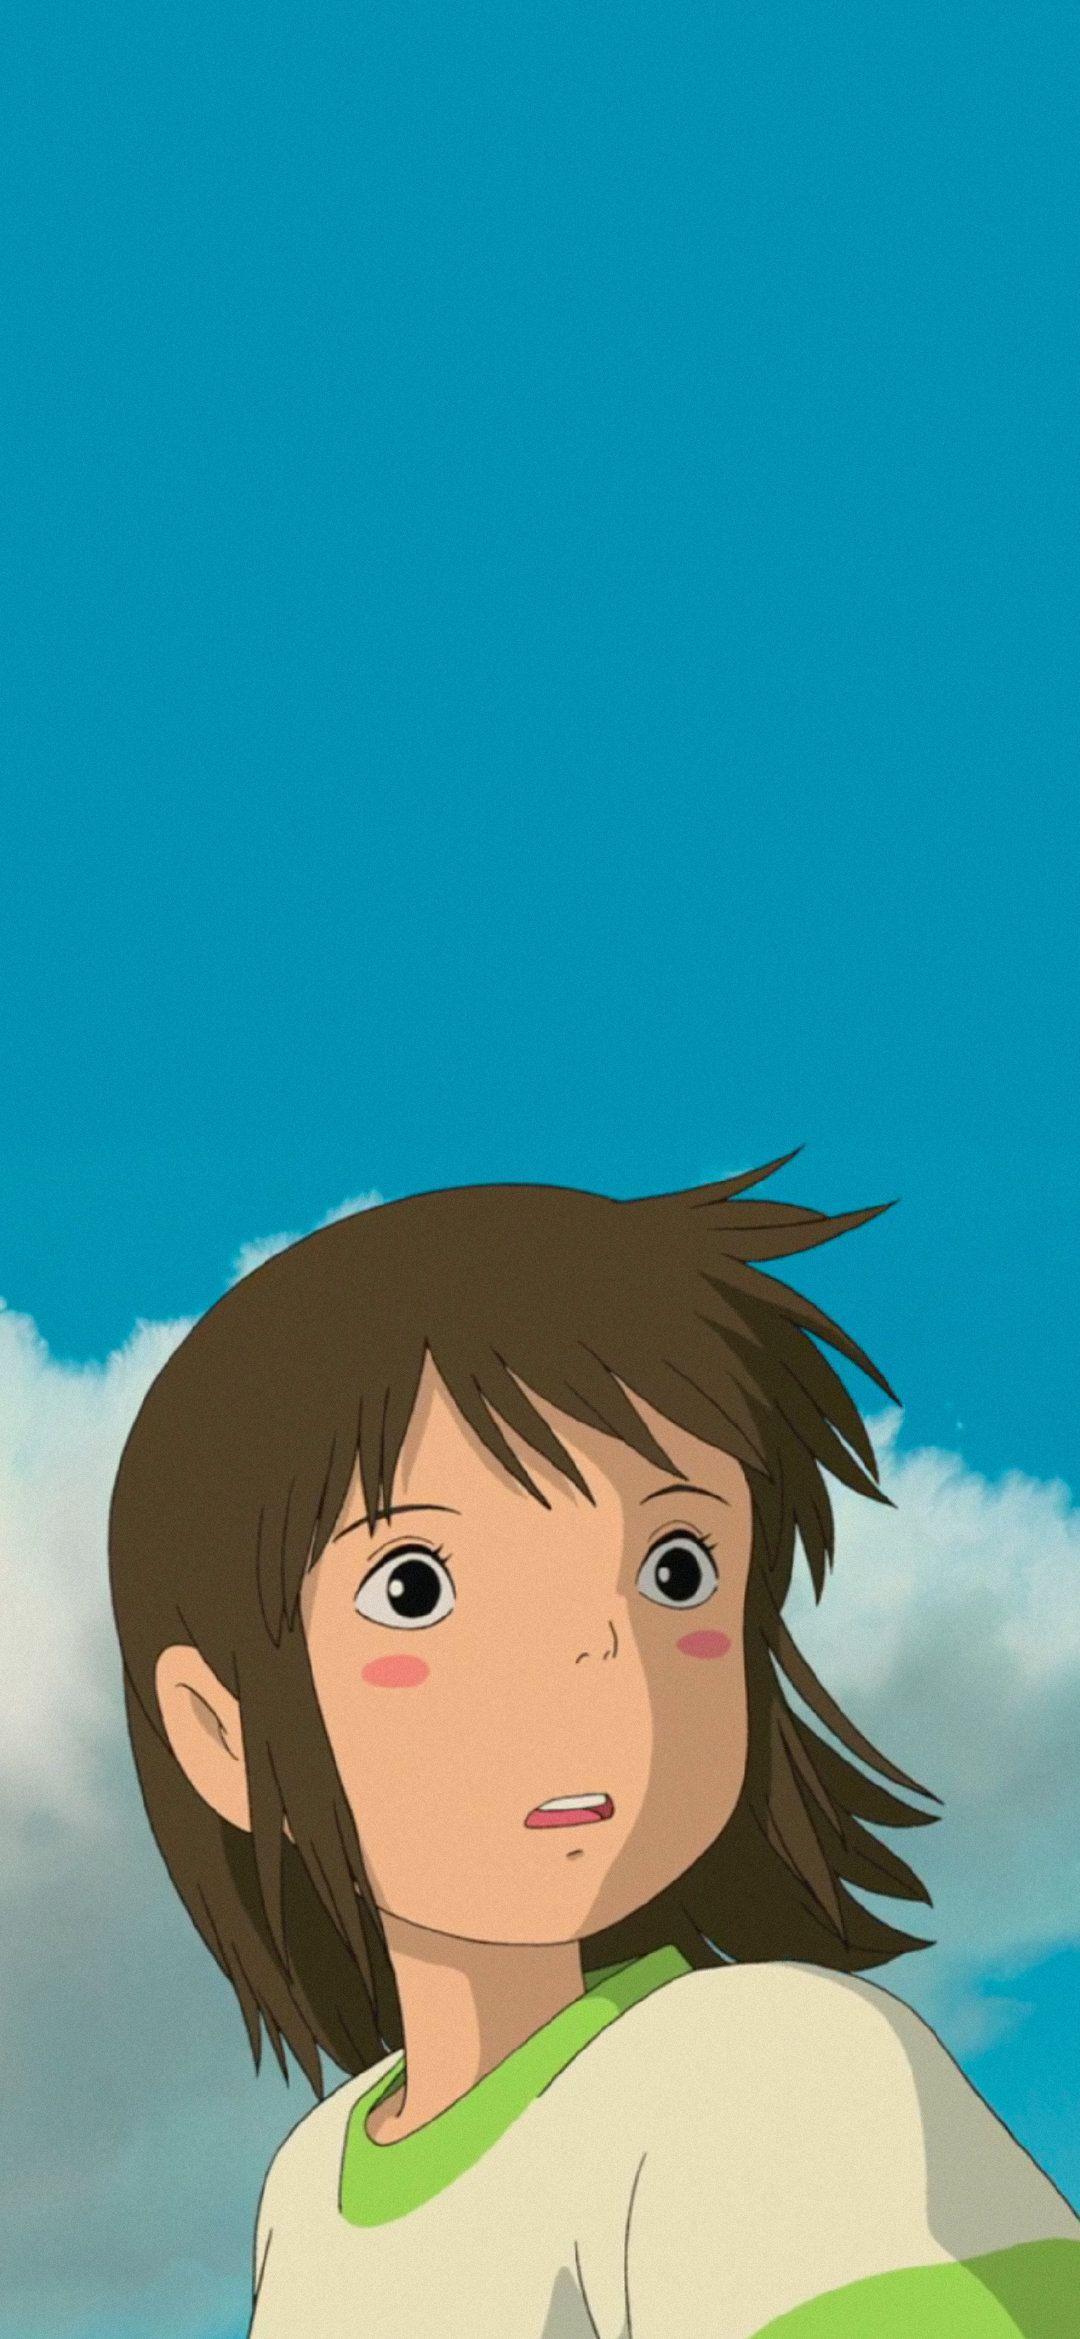 有哪些好看令人难忘的宫崎骏动画里的高清桌面壁纸? - 知乎